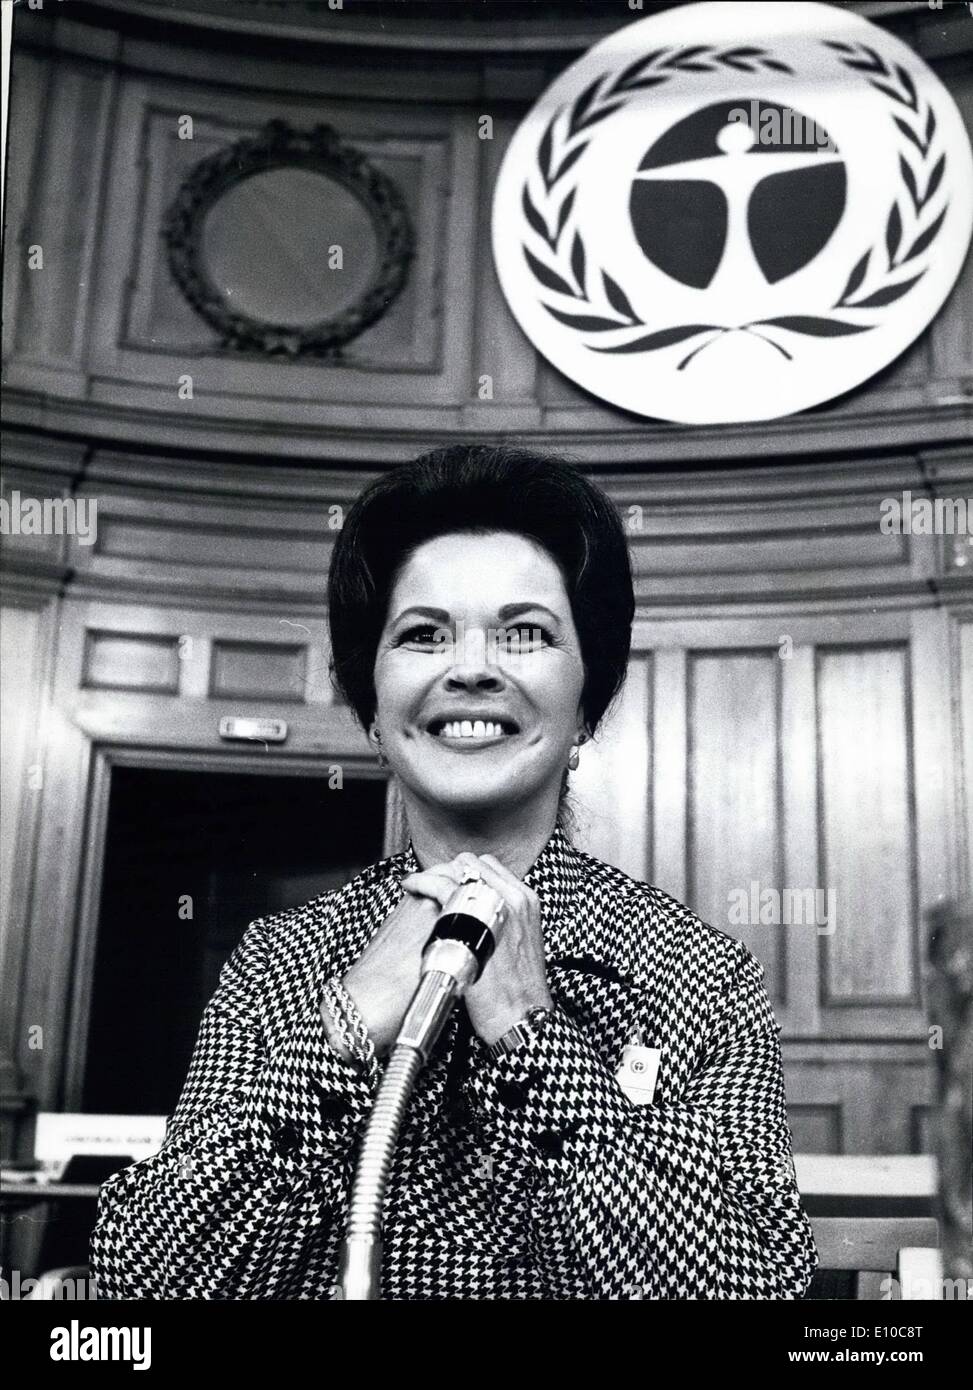 Giugno 06, 1972 - Gli ambienti delle Nazioni Unite, la Conferenza di Stoccolma: Shirley Temple, ben noto ex star del cinema, rappresenta lo stato unito alla conferenza. Foto Stock